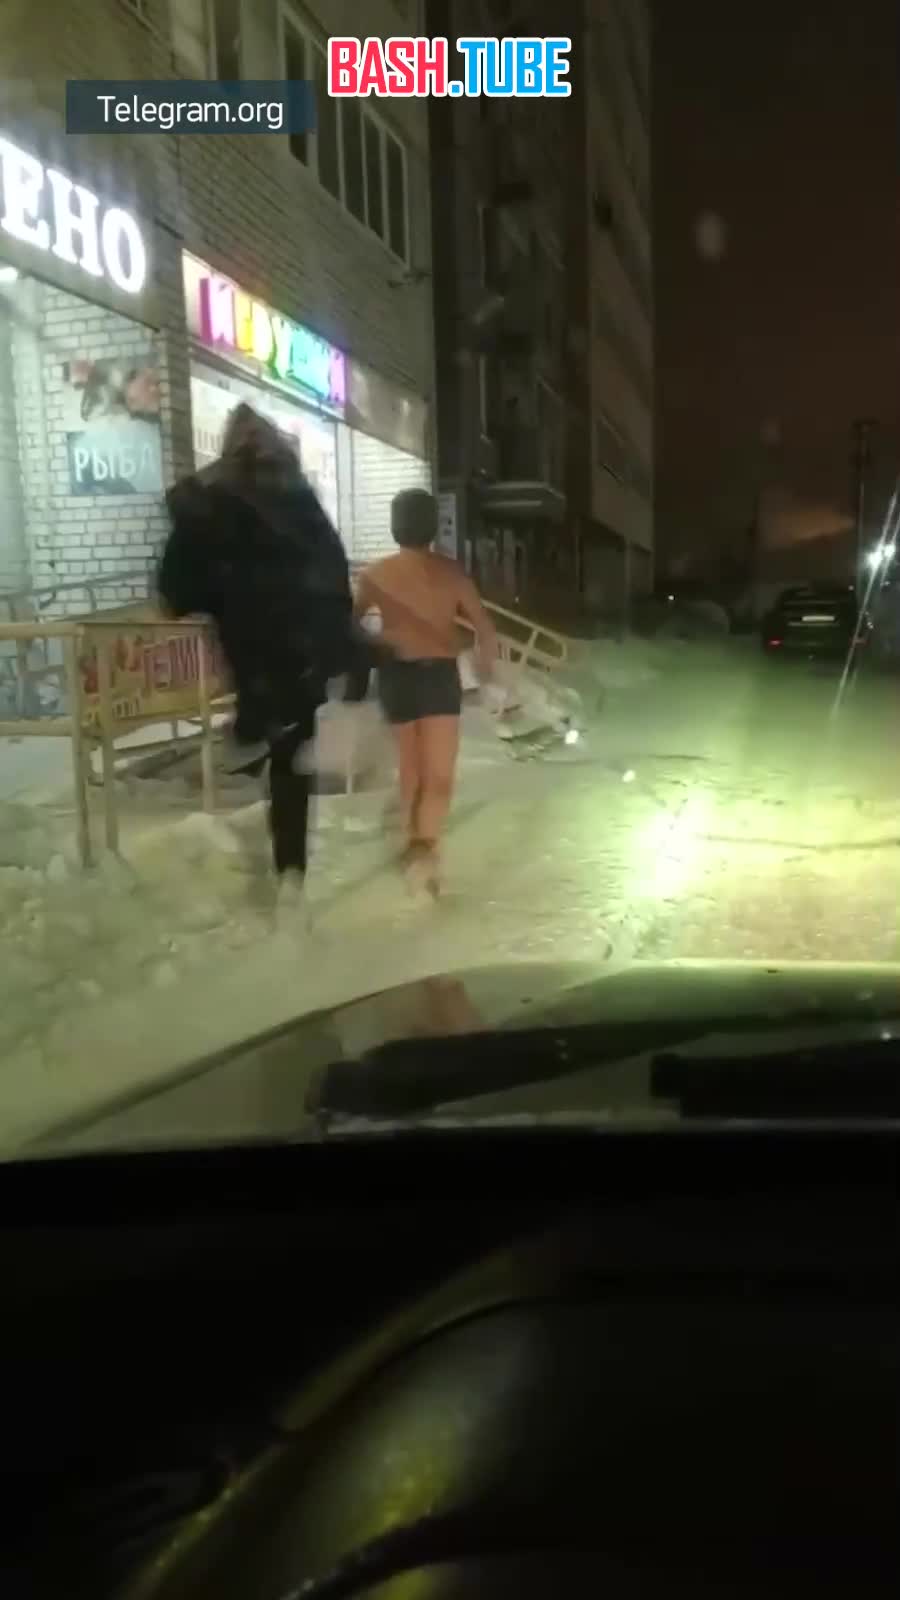  Подростки измывались над сверстником в Пермском крае - его заставили в мороз выйти на улицу в нижнем белье